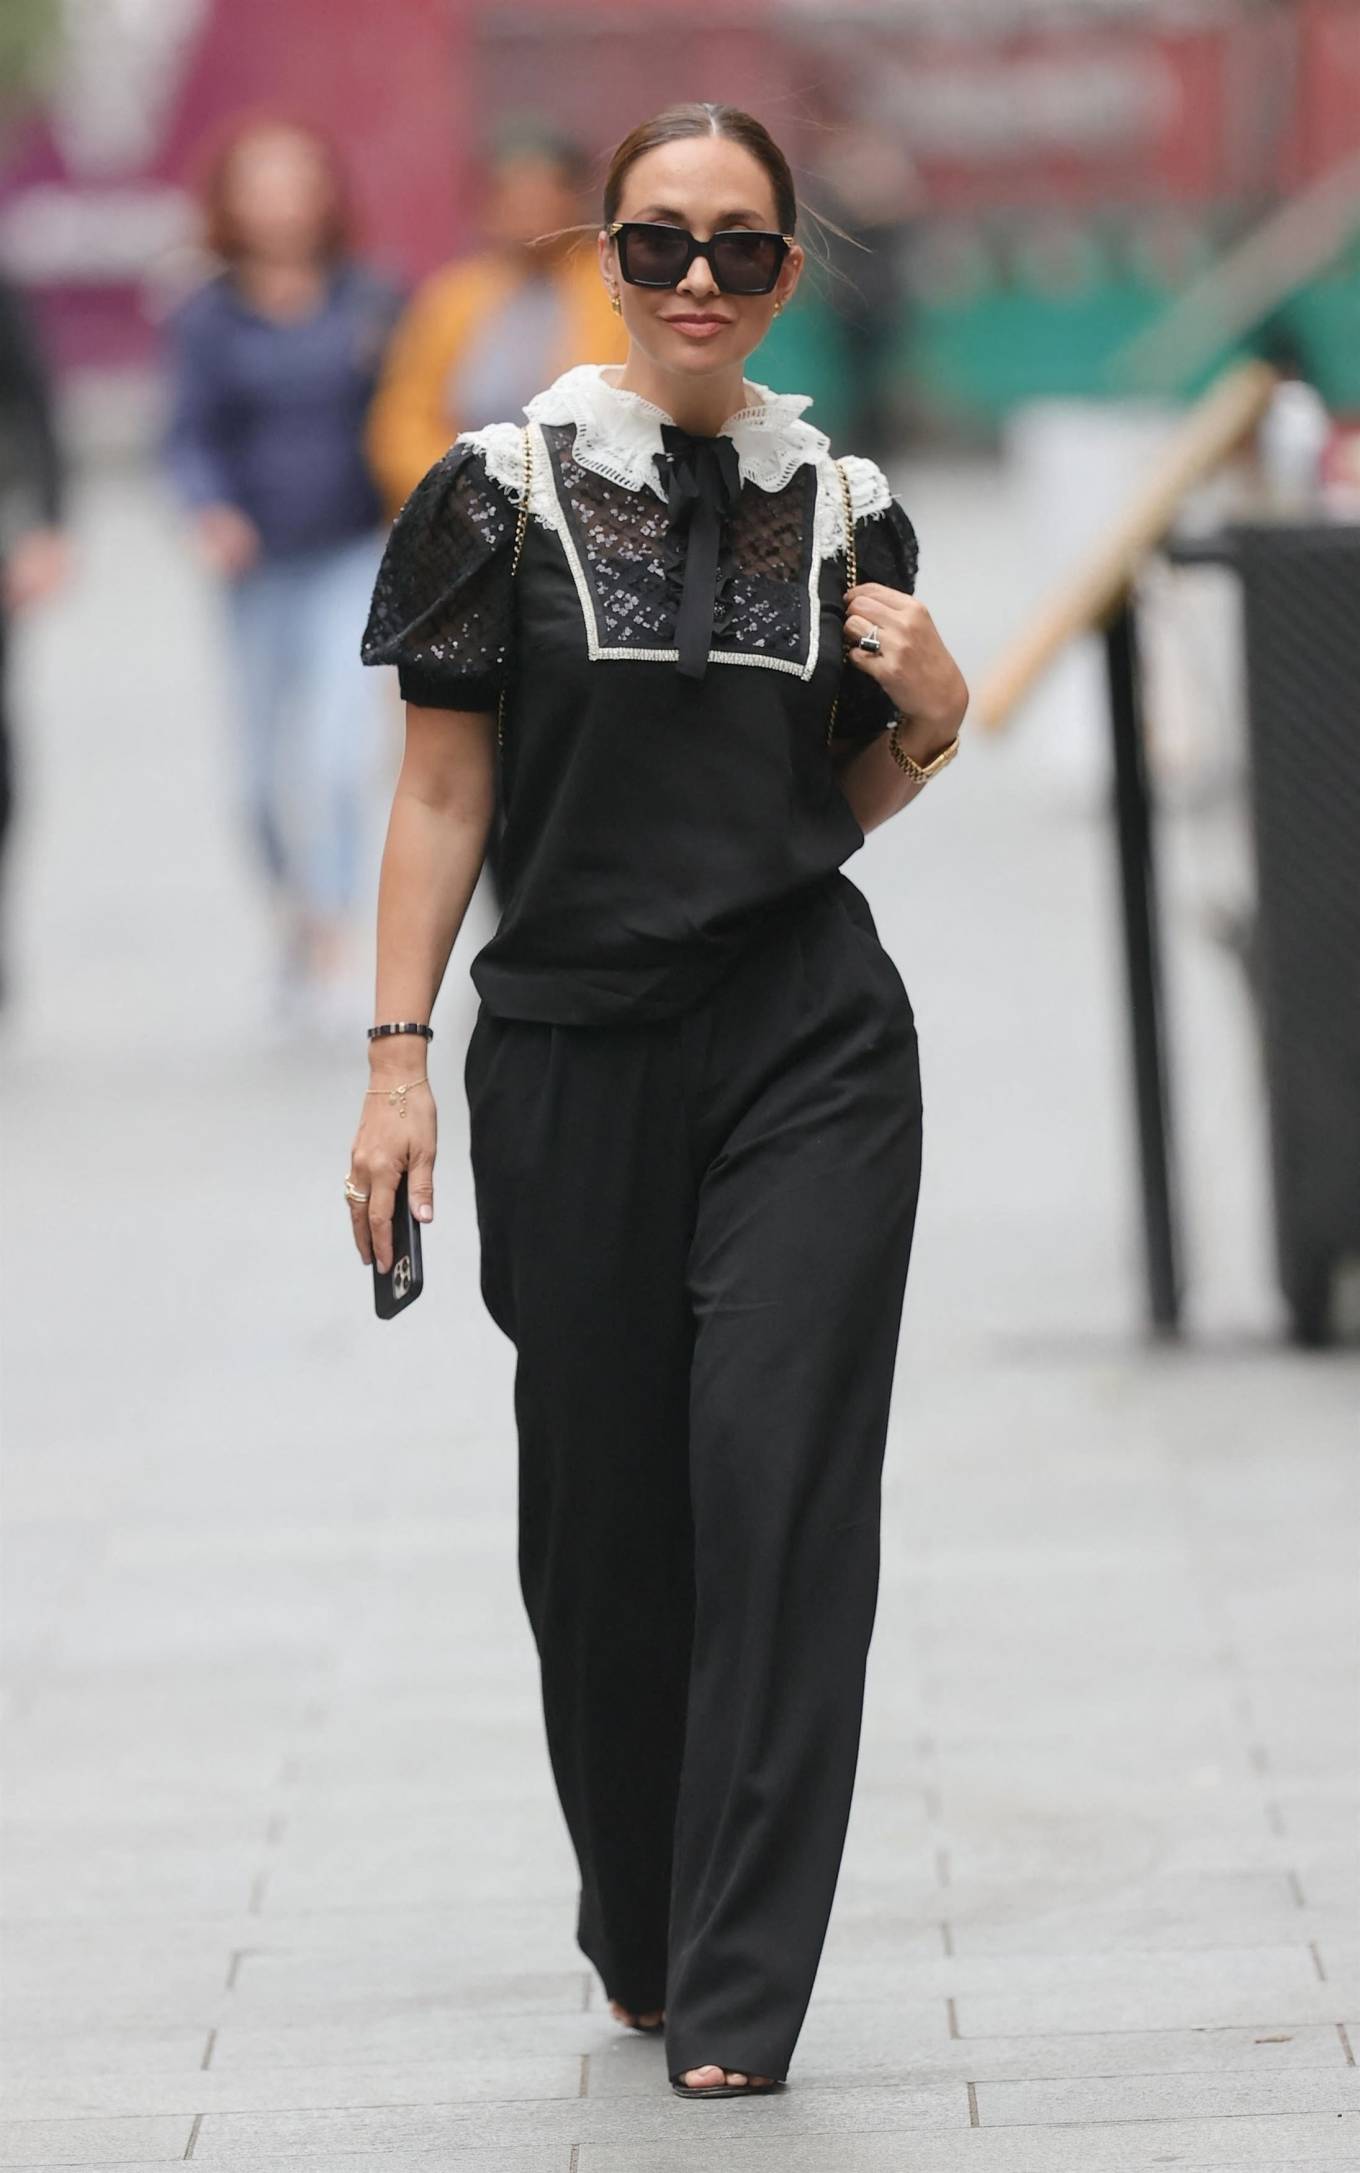 Myleene Klass 2021 : Myleene Klass – Out in a monochrome top and black pants in London-12